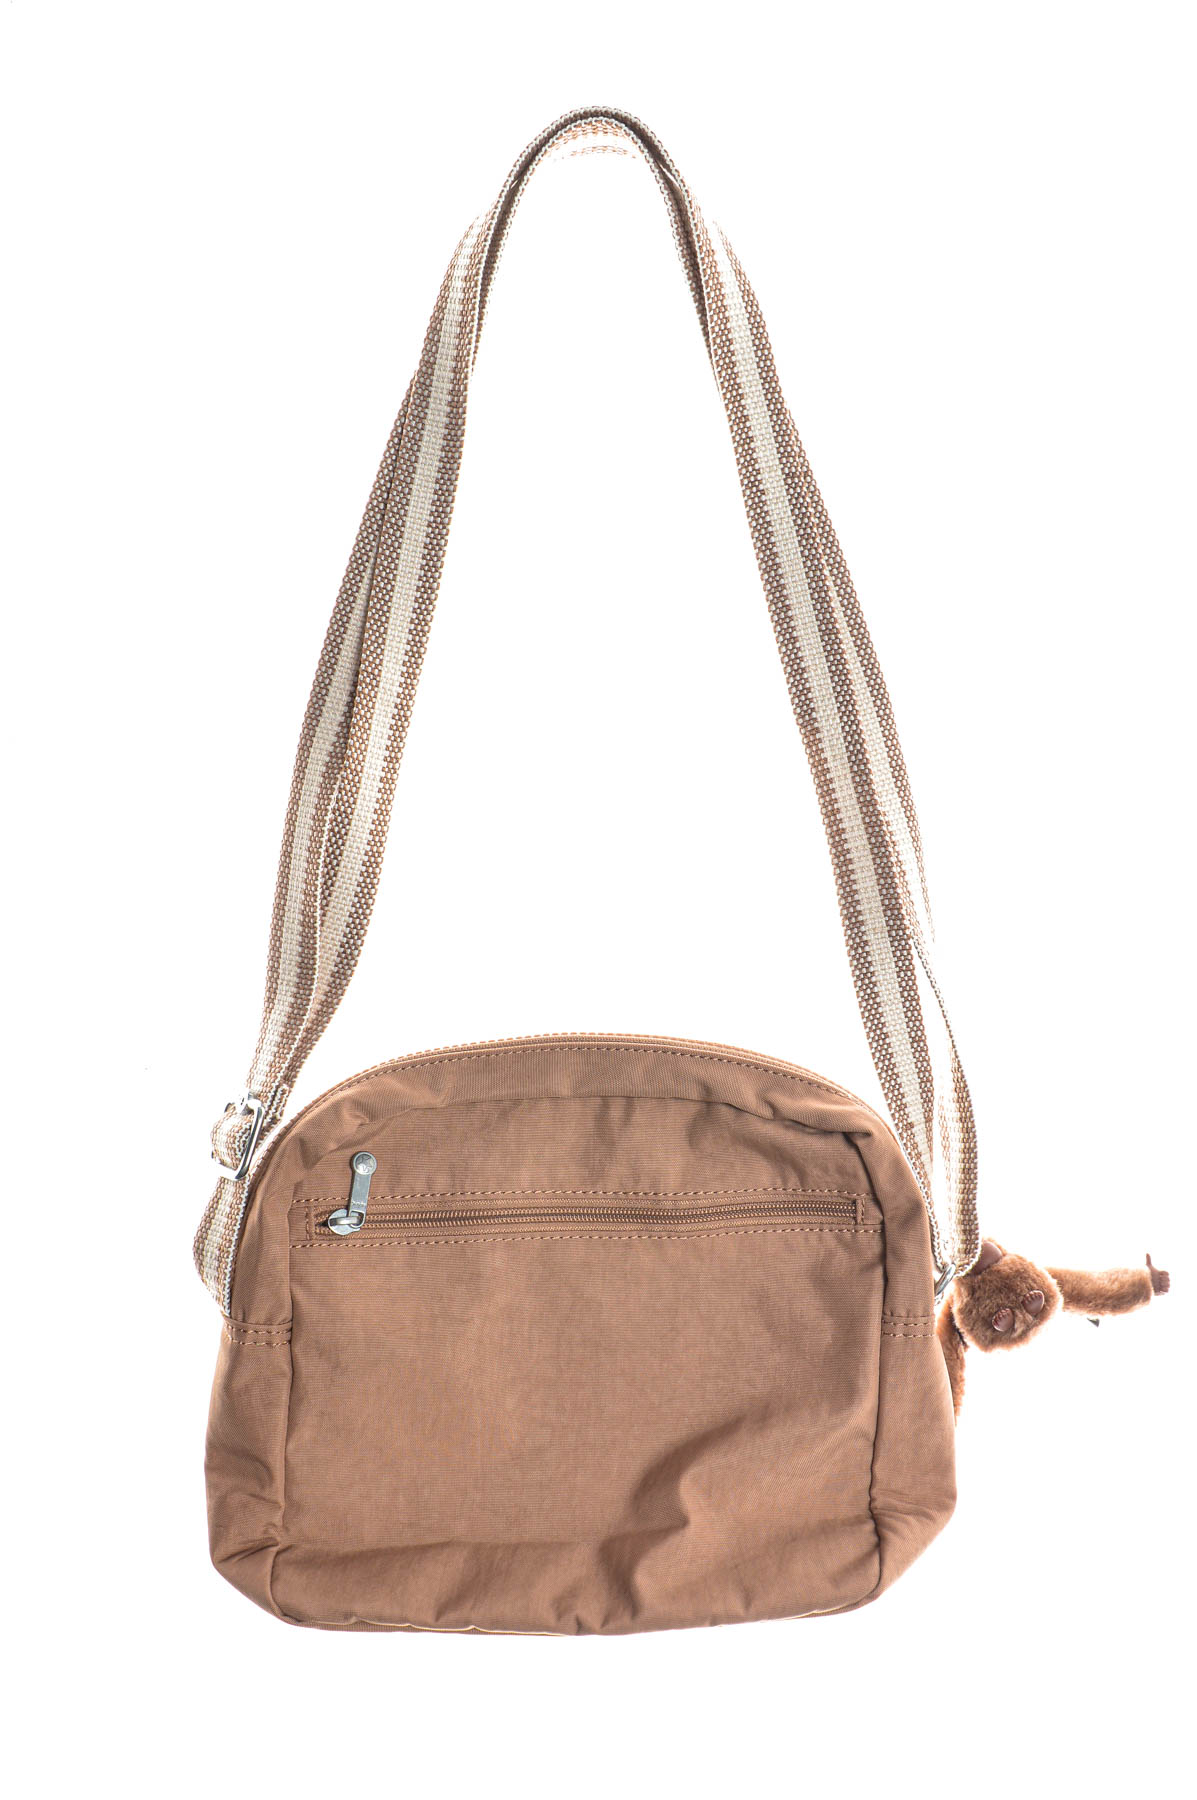 Women's bag - KIPLING - 1